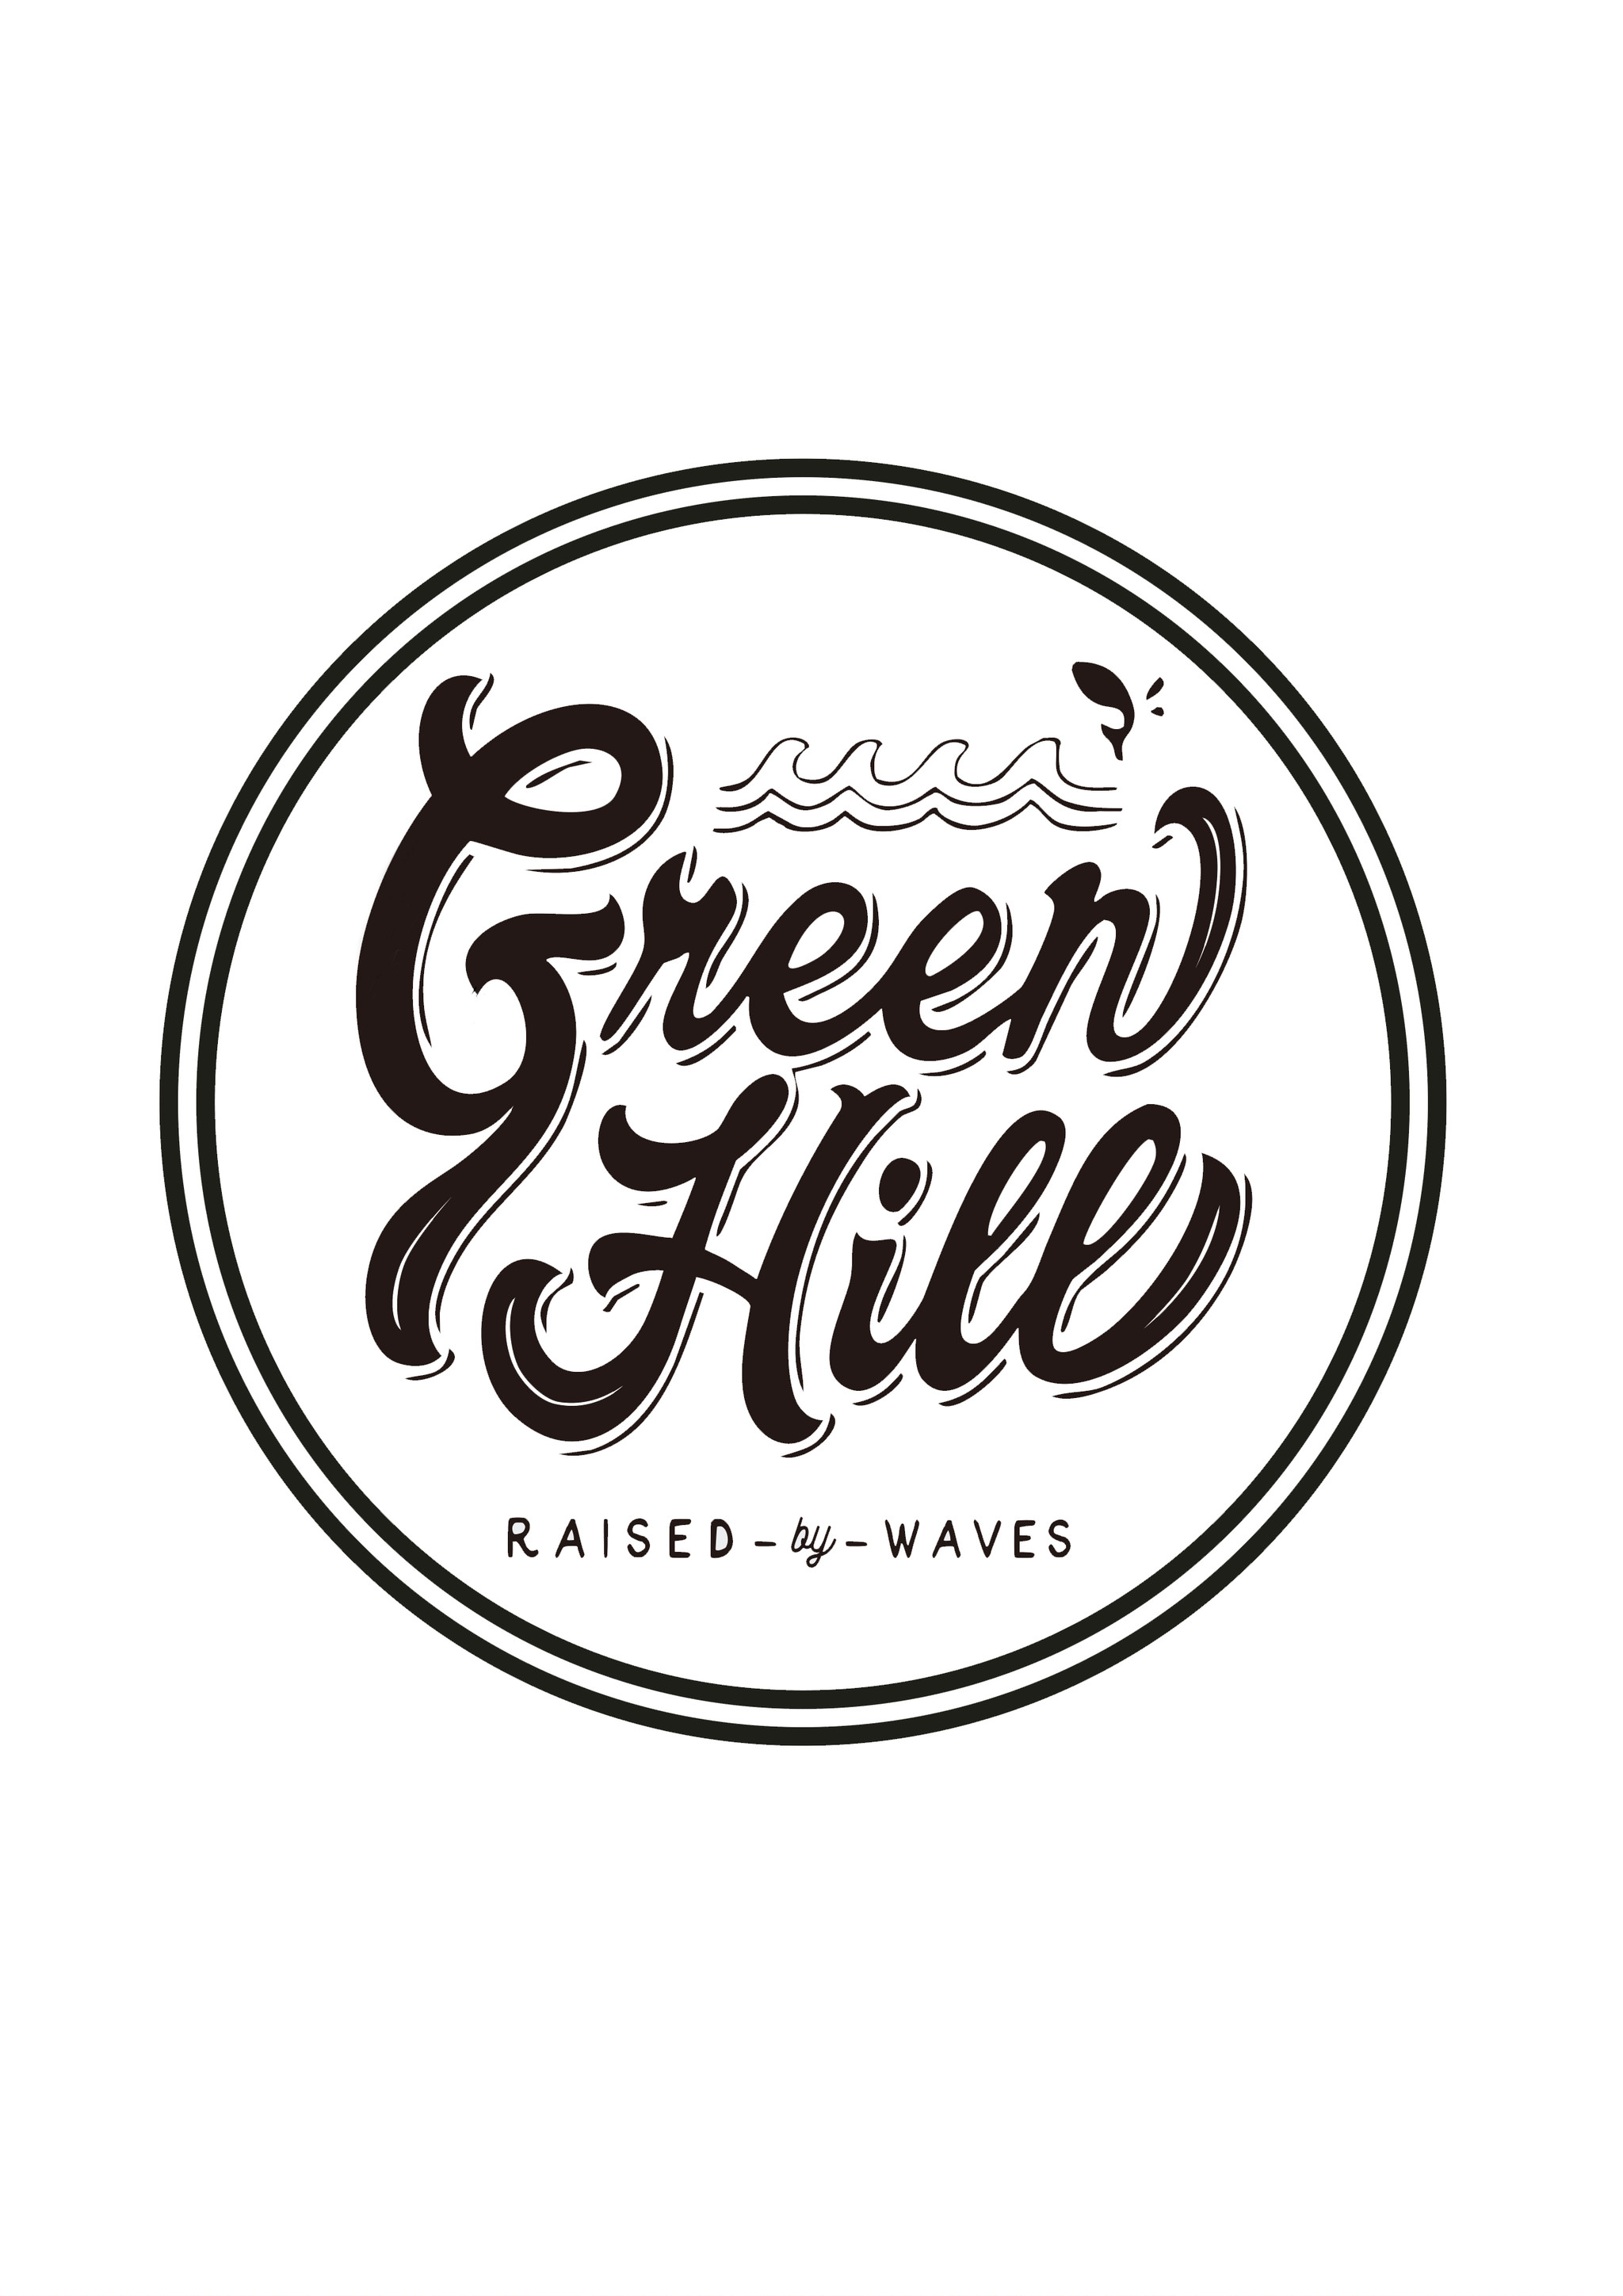 a1greenhill